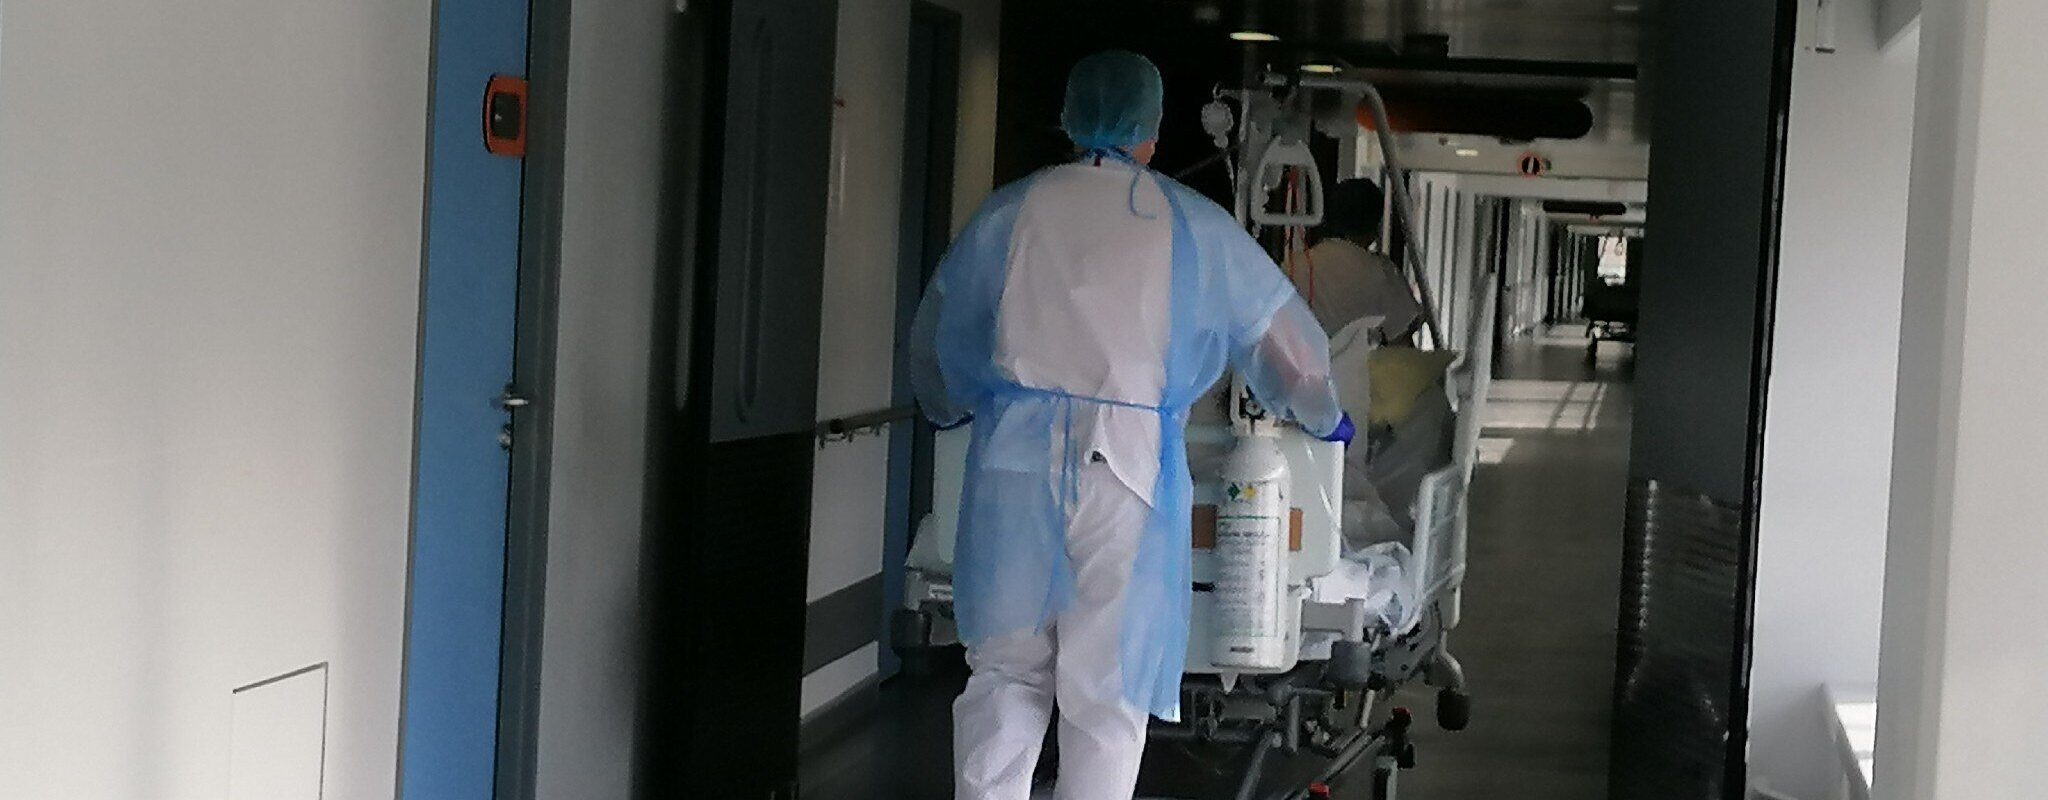 Infirmières anesthésistes en grève, « semaine noire » aux blocs